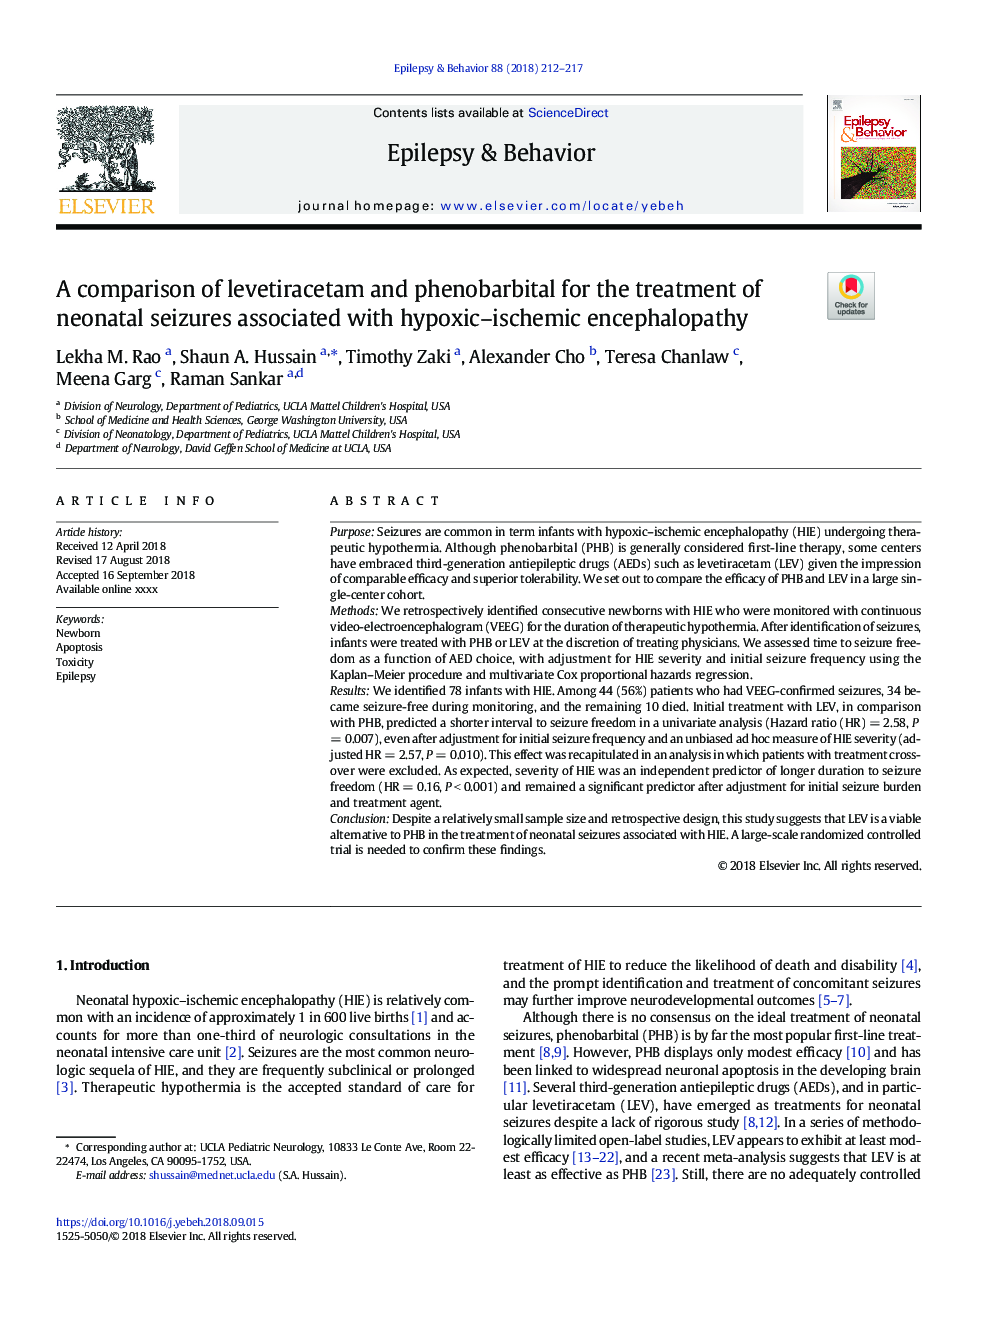 مقایسه لوتیترازتام و فنوباربیتال در درمان تشنجات نوزادی با آنسفالوپاتی هیپوکسیک-ایسکمی